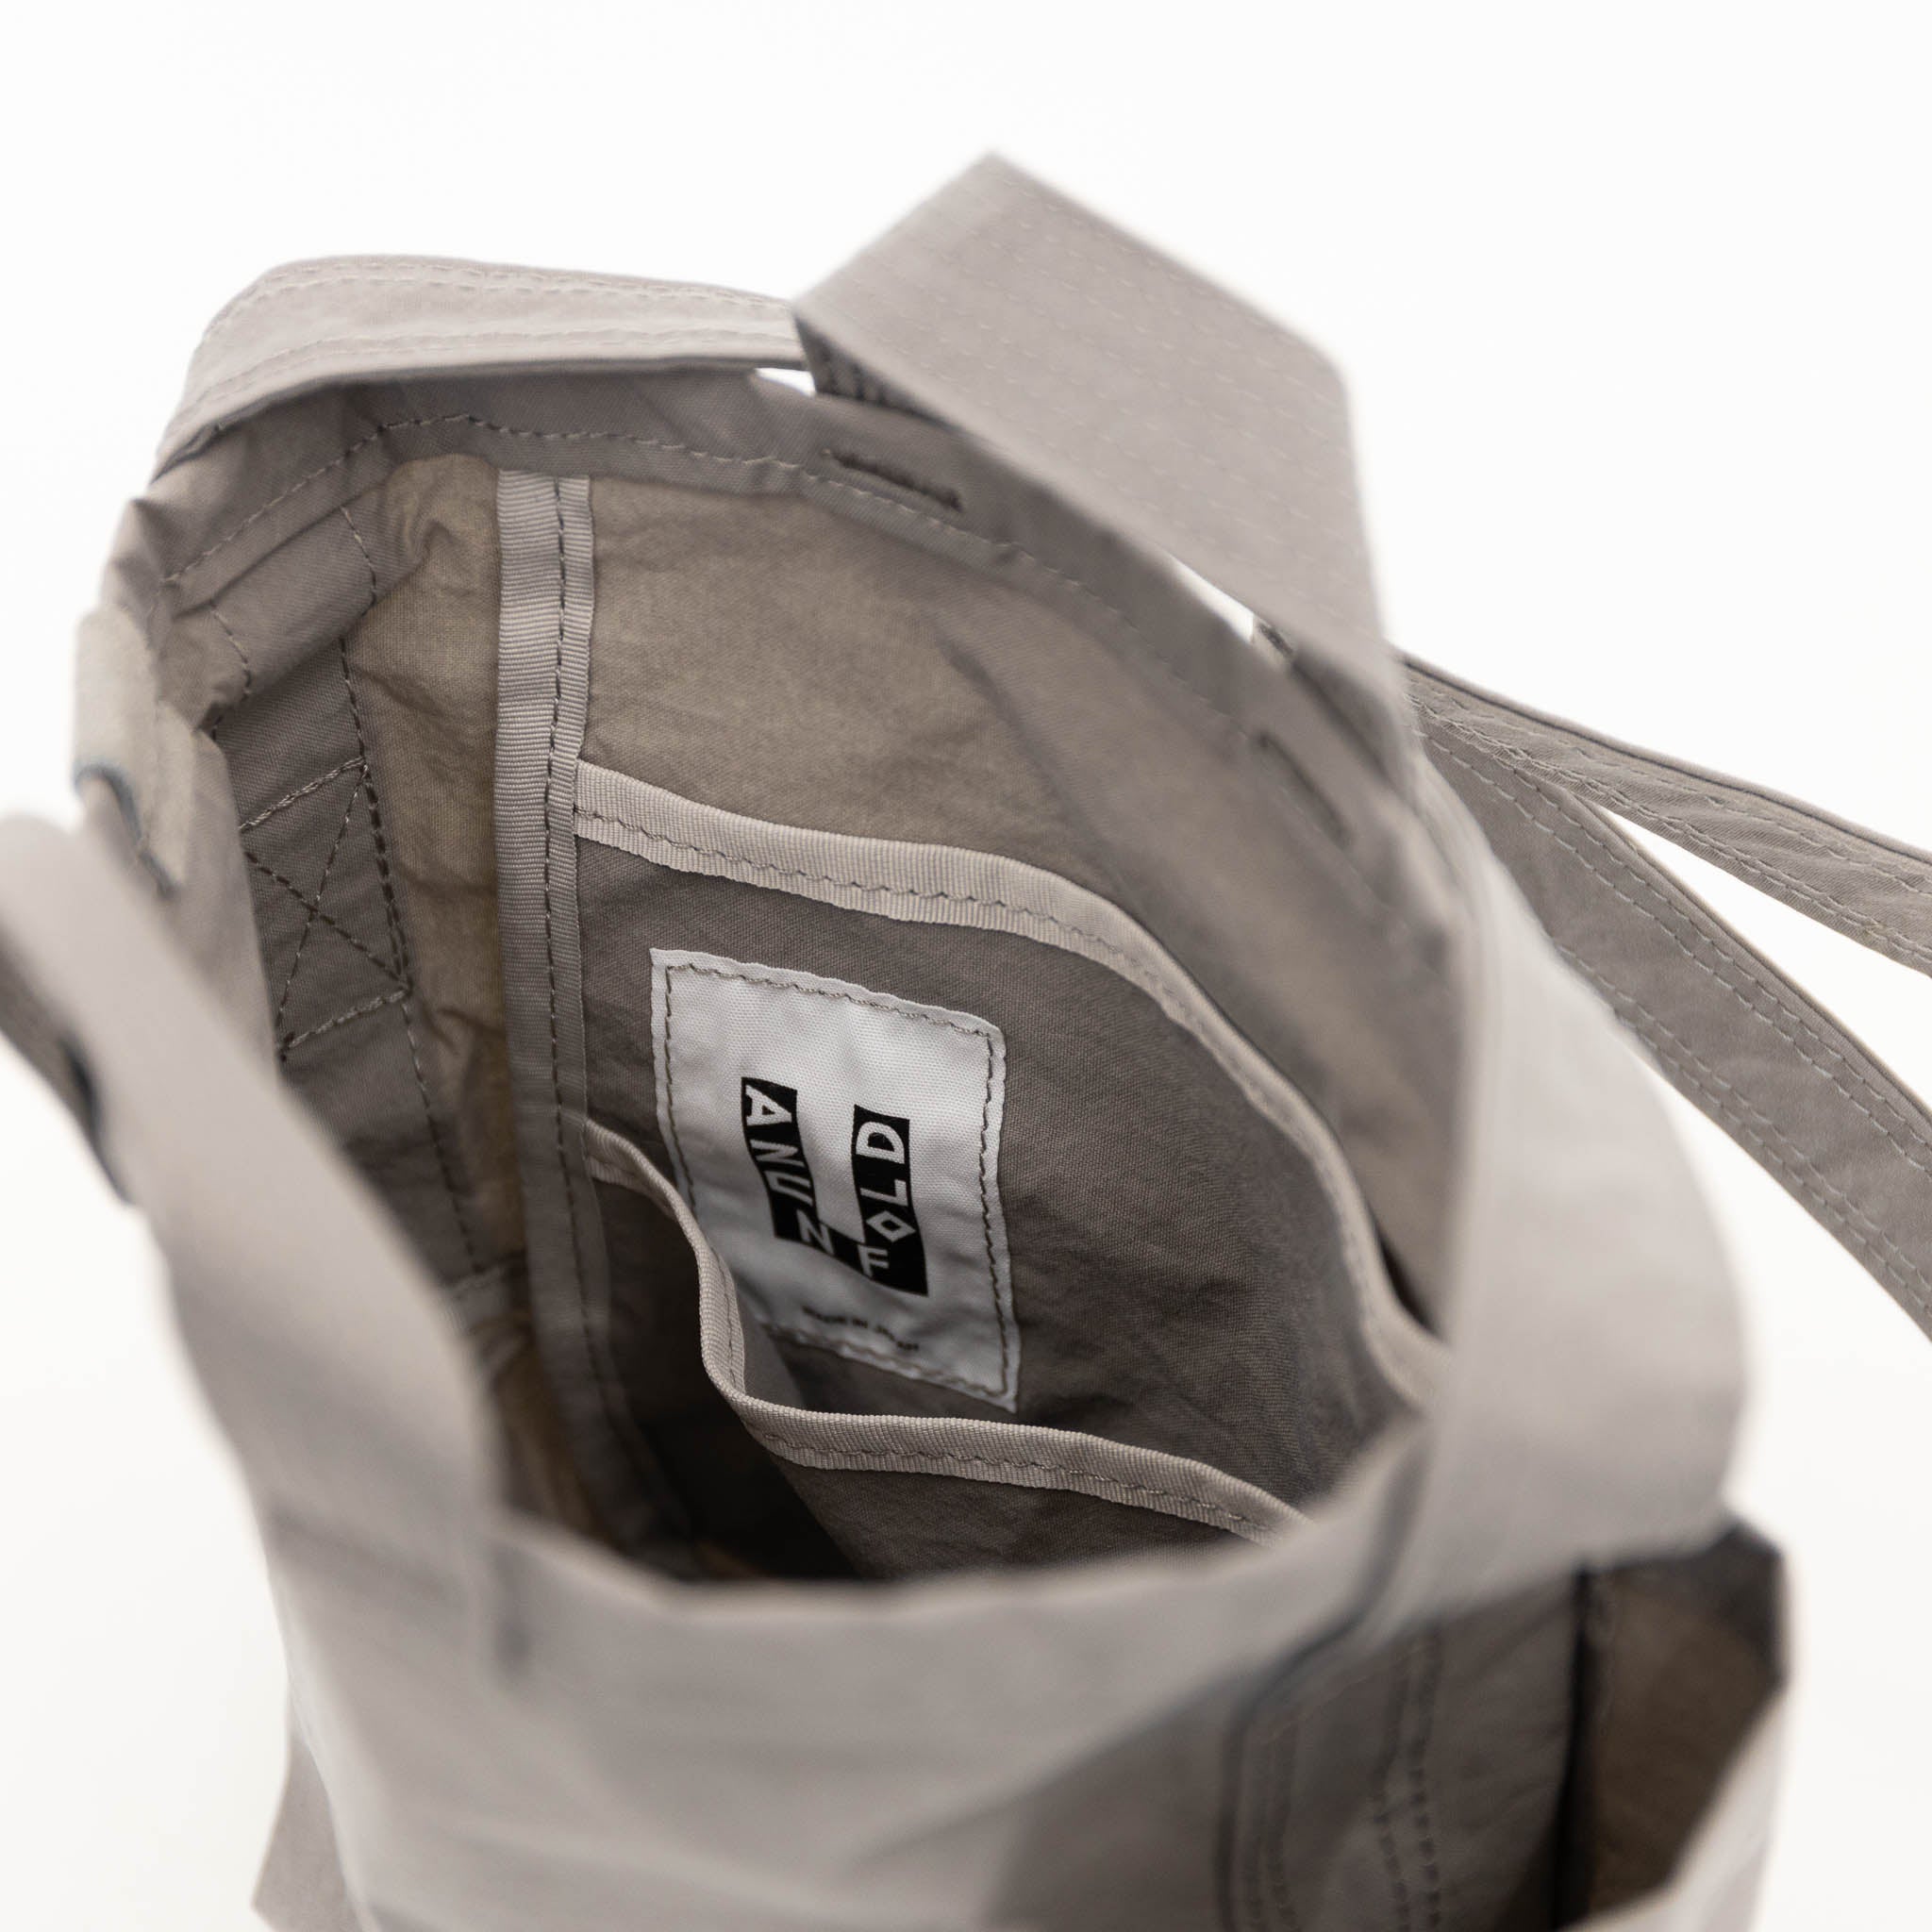 Anunfold Side Pocket Tote Bag